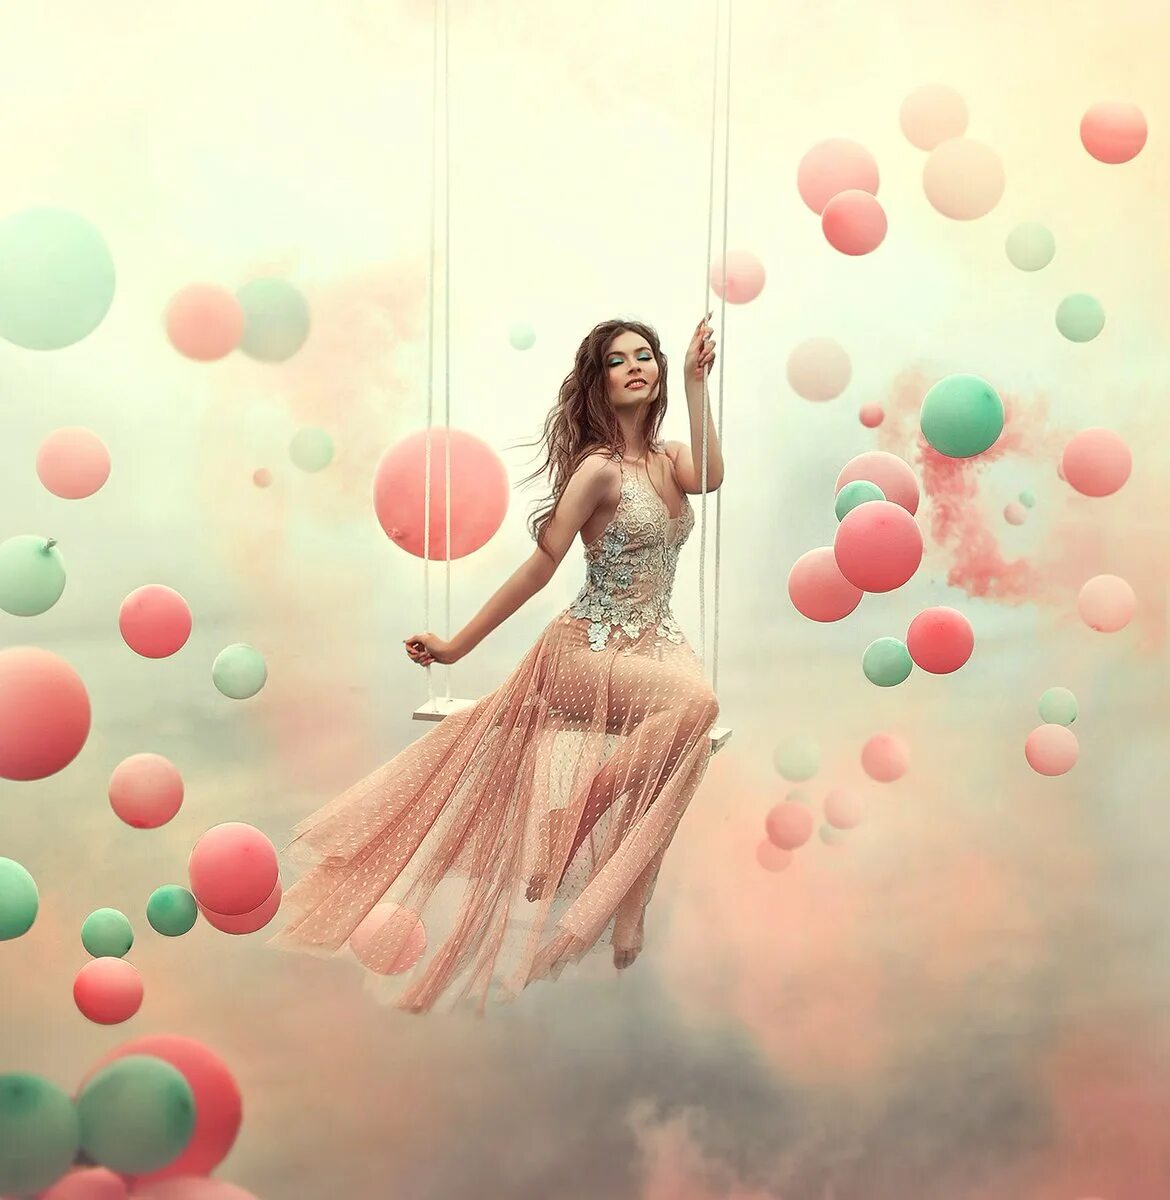 Танец с воздушными шарами. Девушка с воздушными шарами. Девушка с шариками воздушными. Фотосессия с шариками.